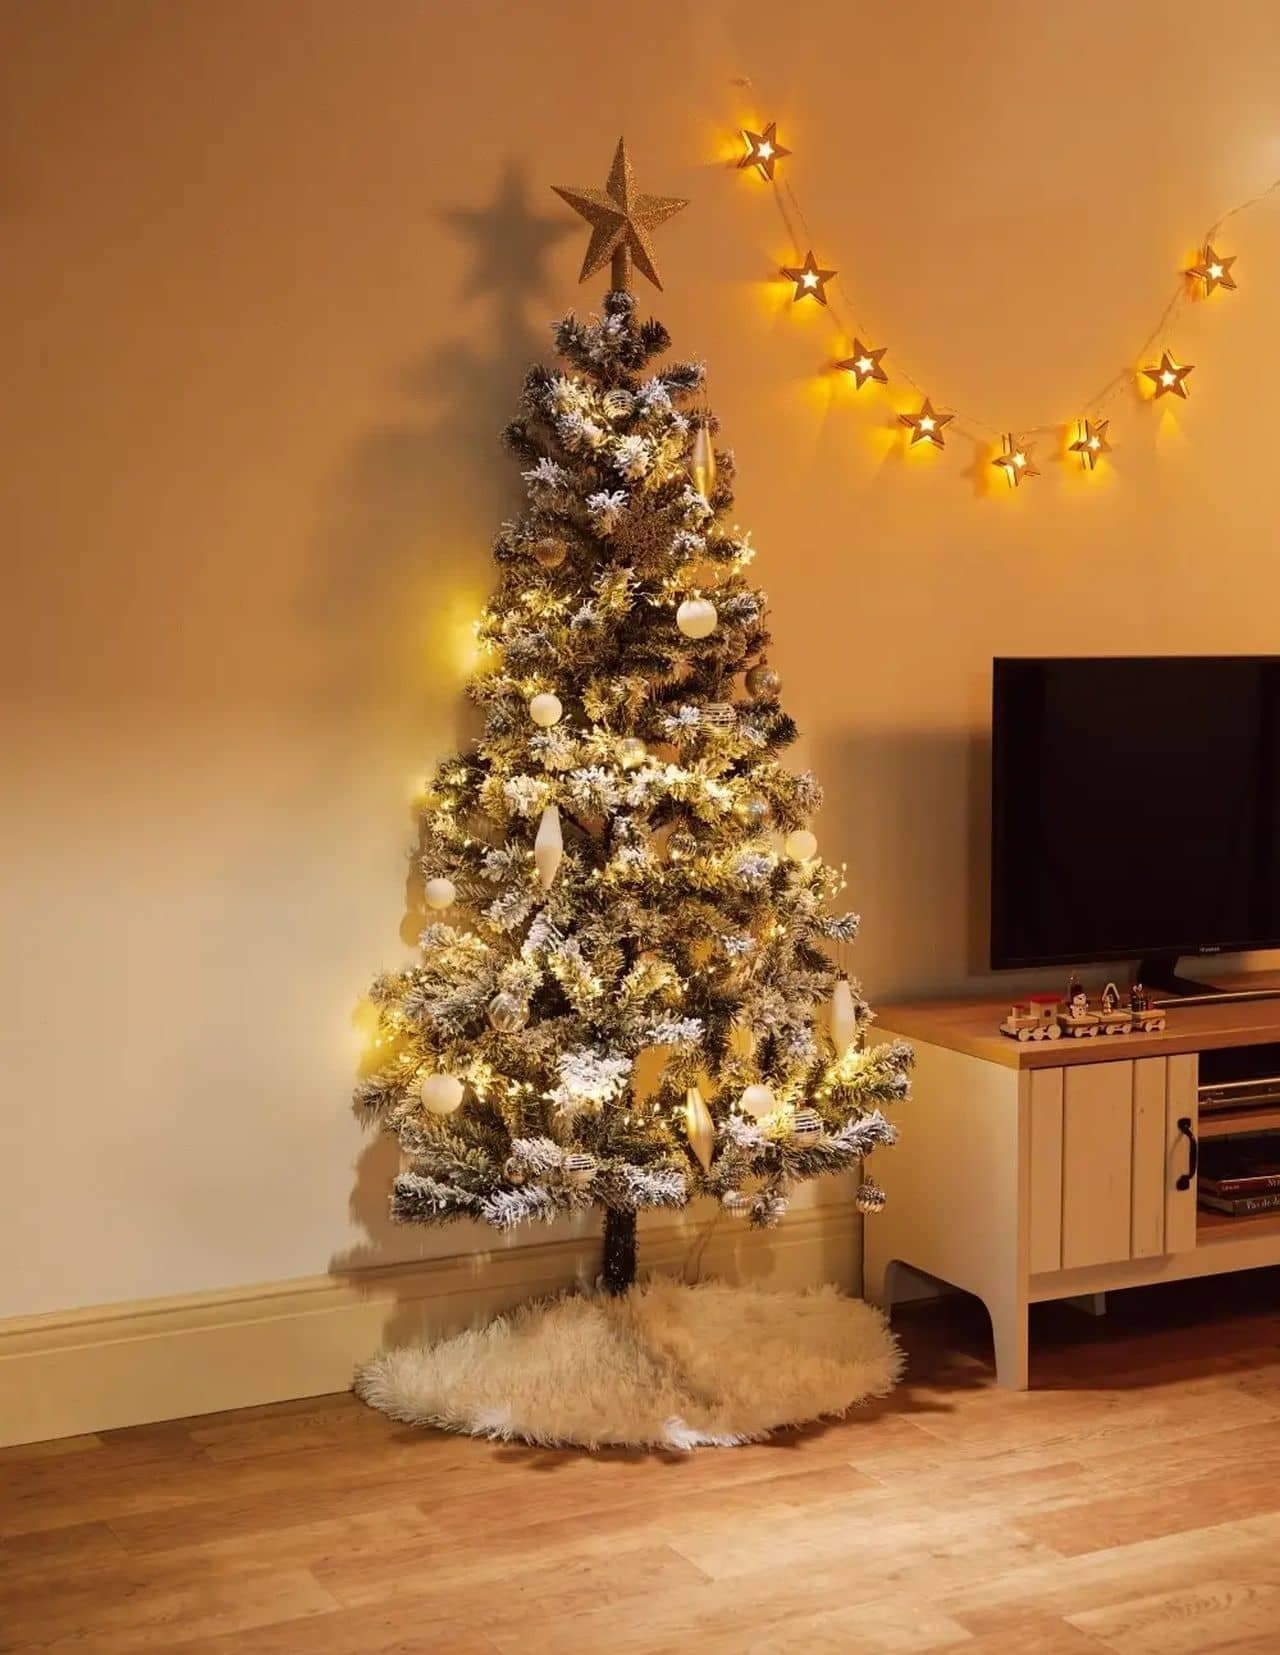 Nitori 2022 Christmas product "Half Tree